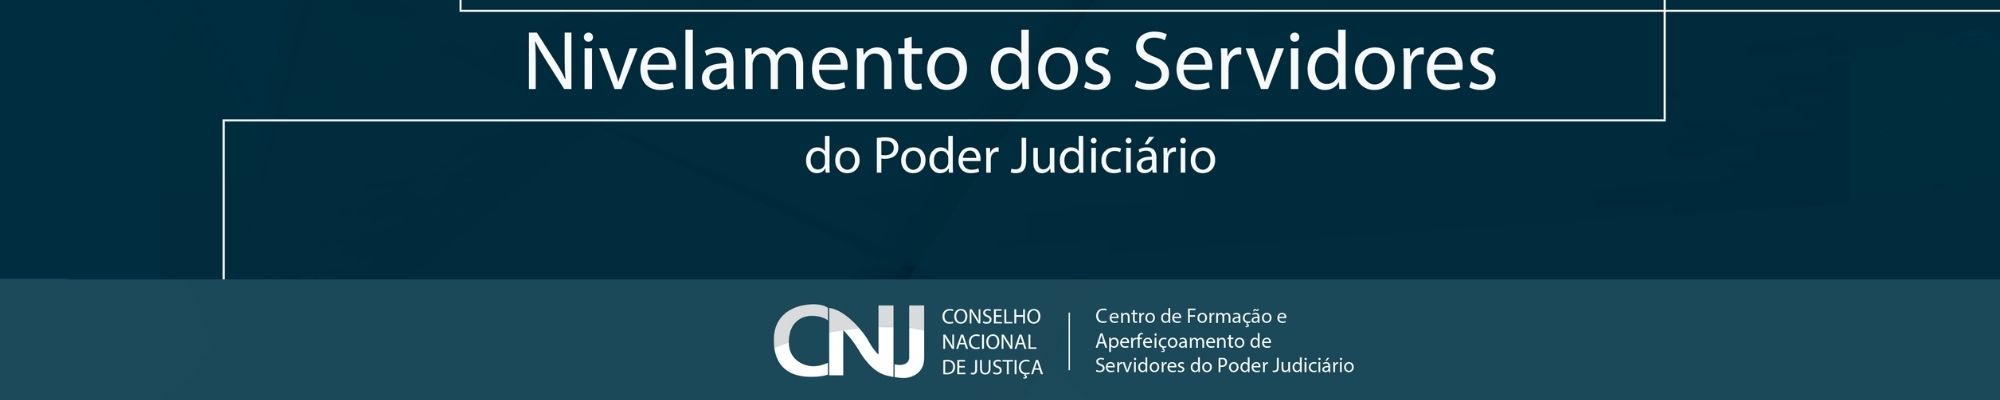 Nivelamento dos Servidores do Poder Judiciário